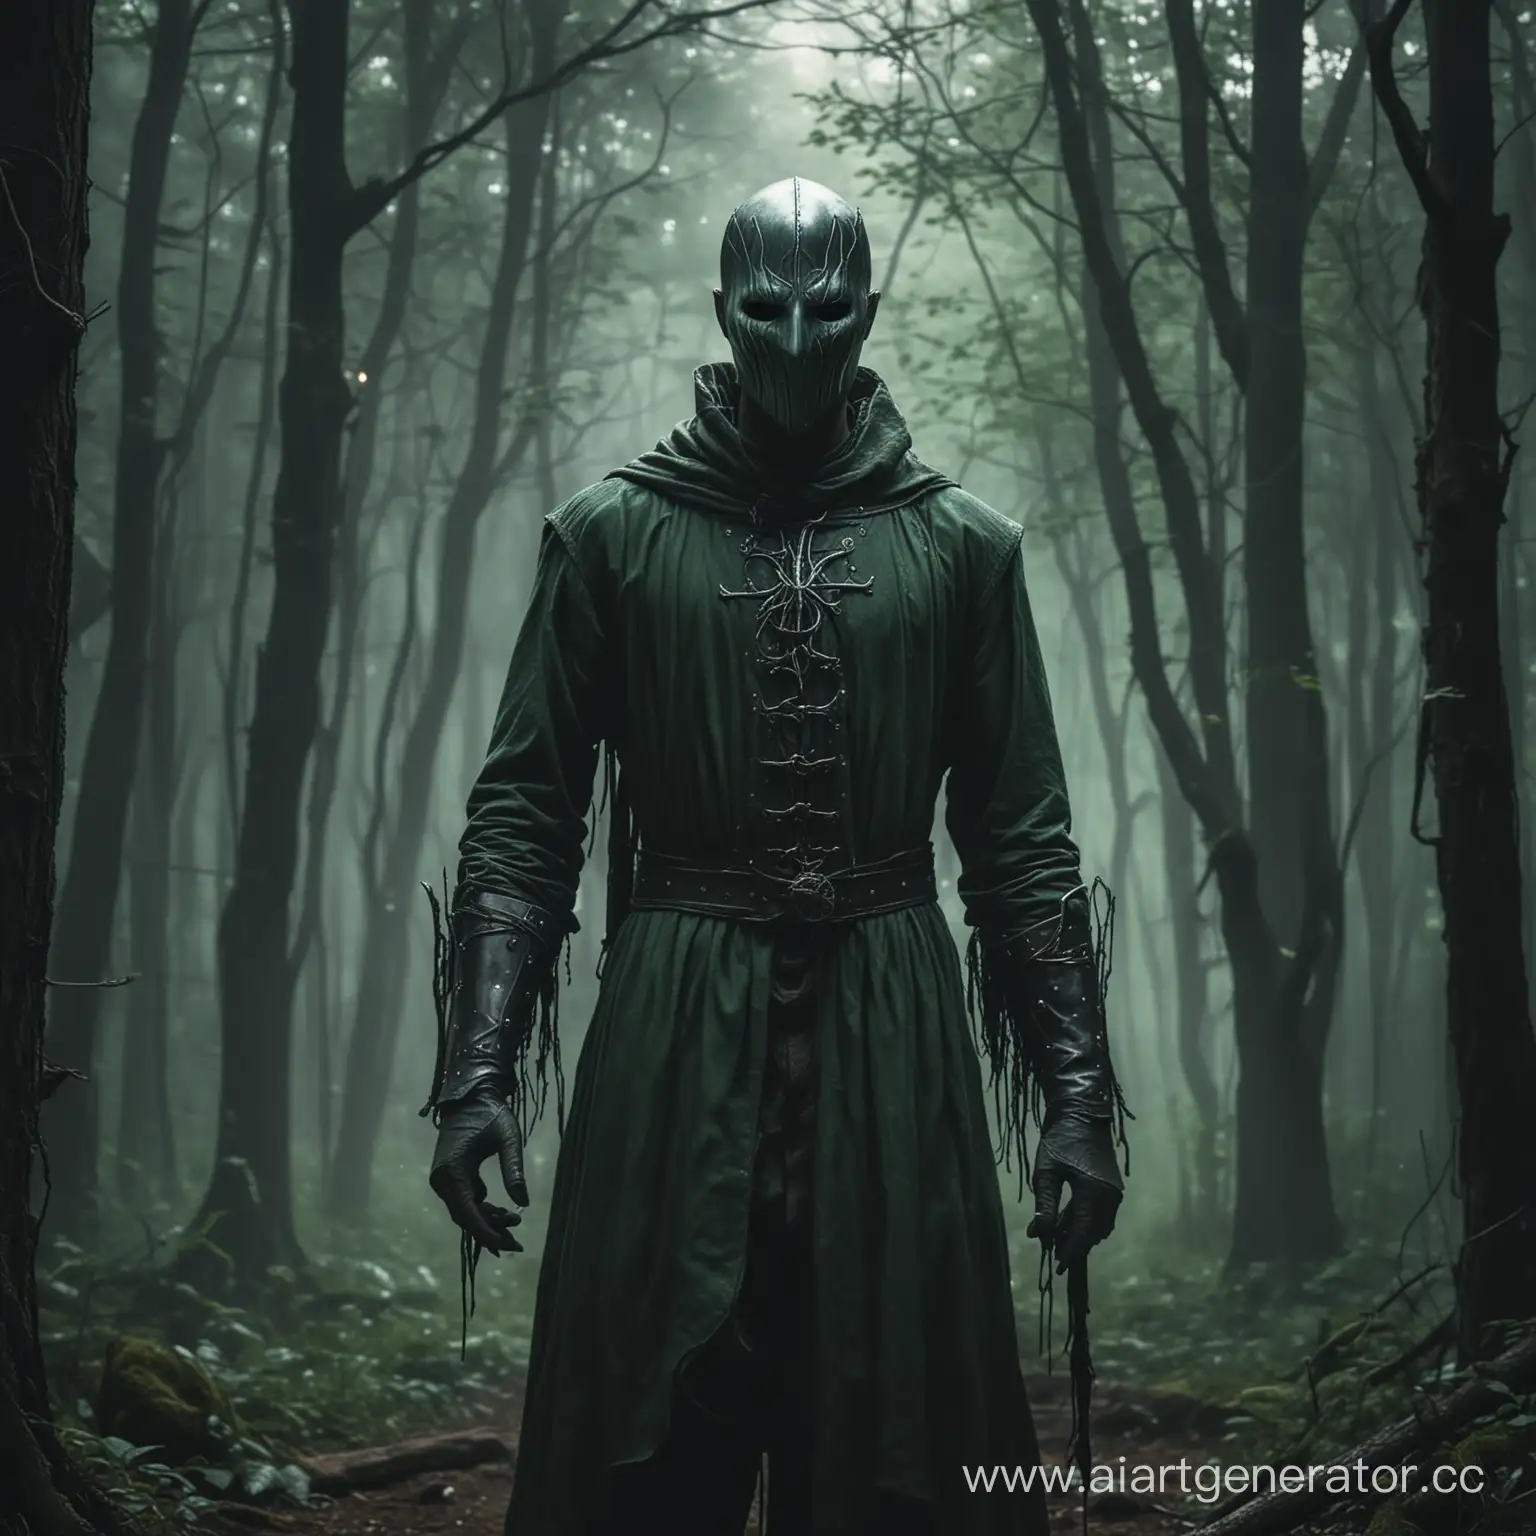 мрачный худощавый мужчина в свободной одежде, стоит в темном лесу, глаза светятся, железная маска повторяет контур лица, в руках зеленого цвета магия, волшебник некромант, фэнтези